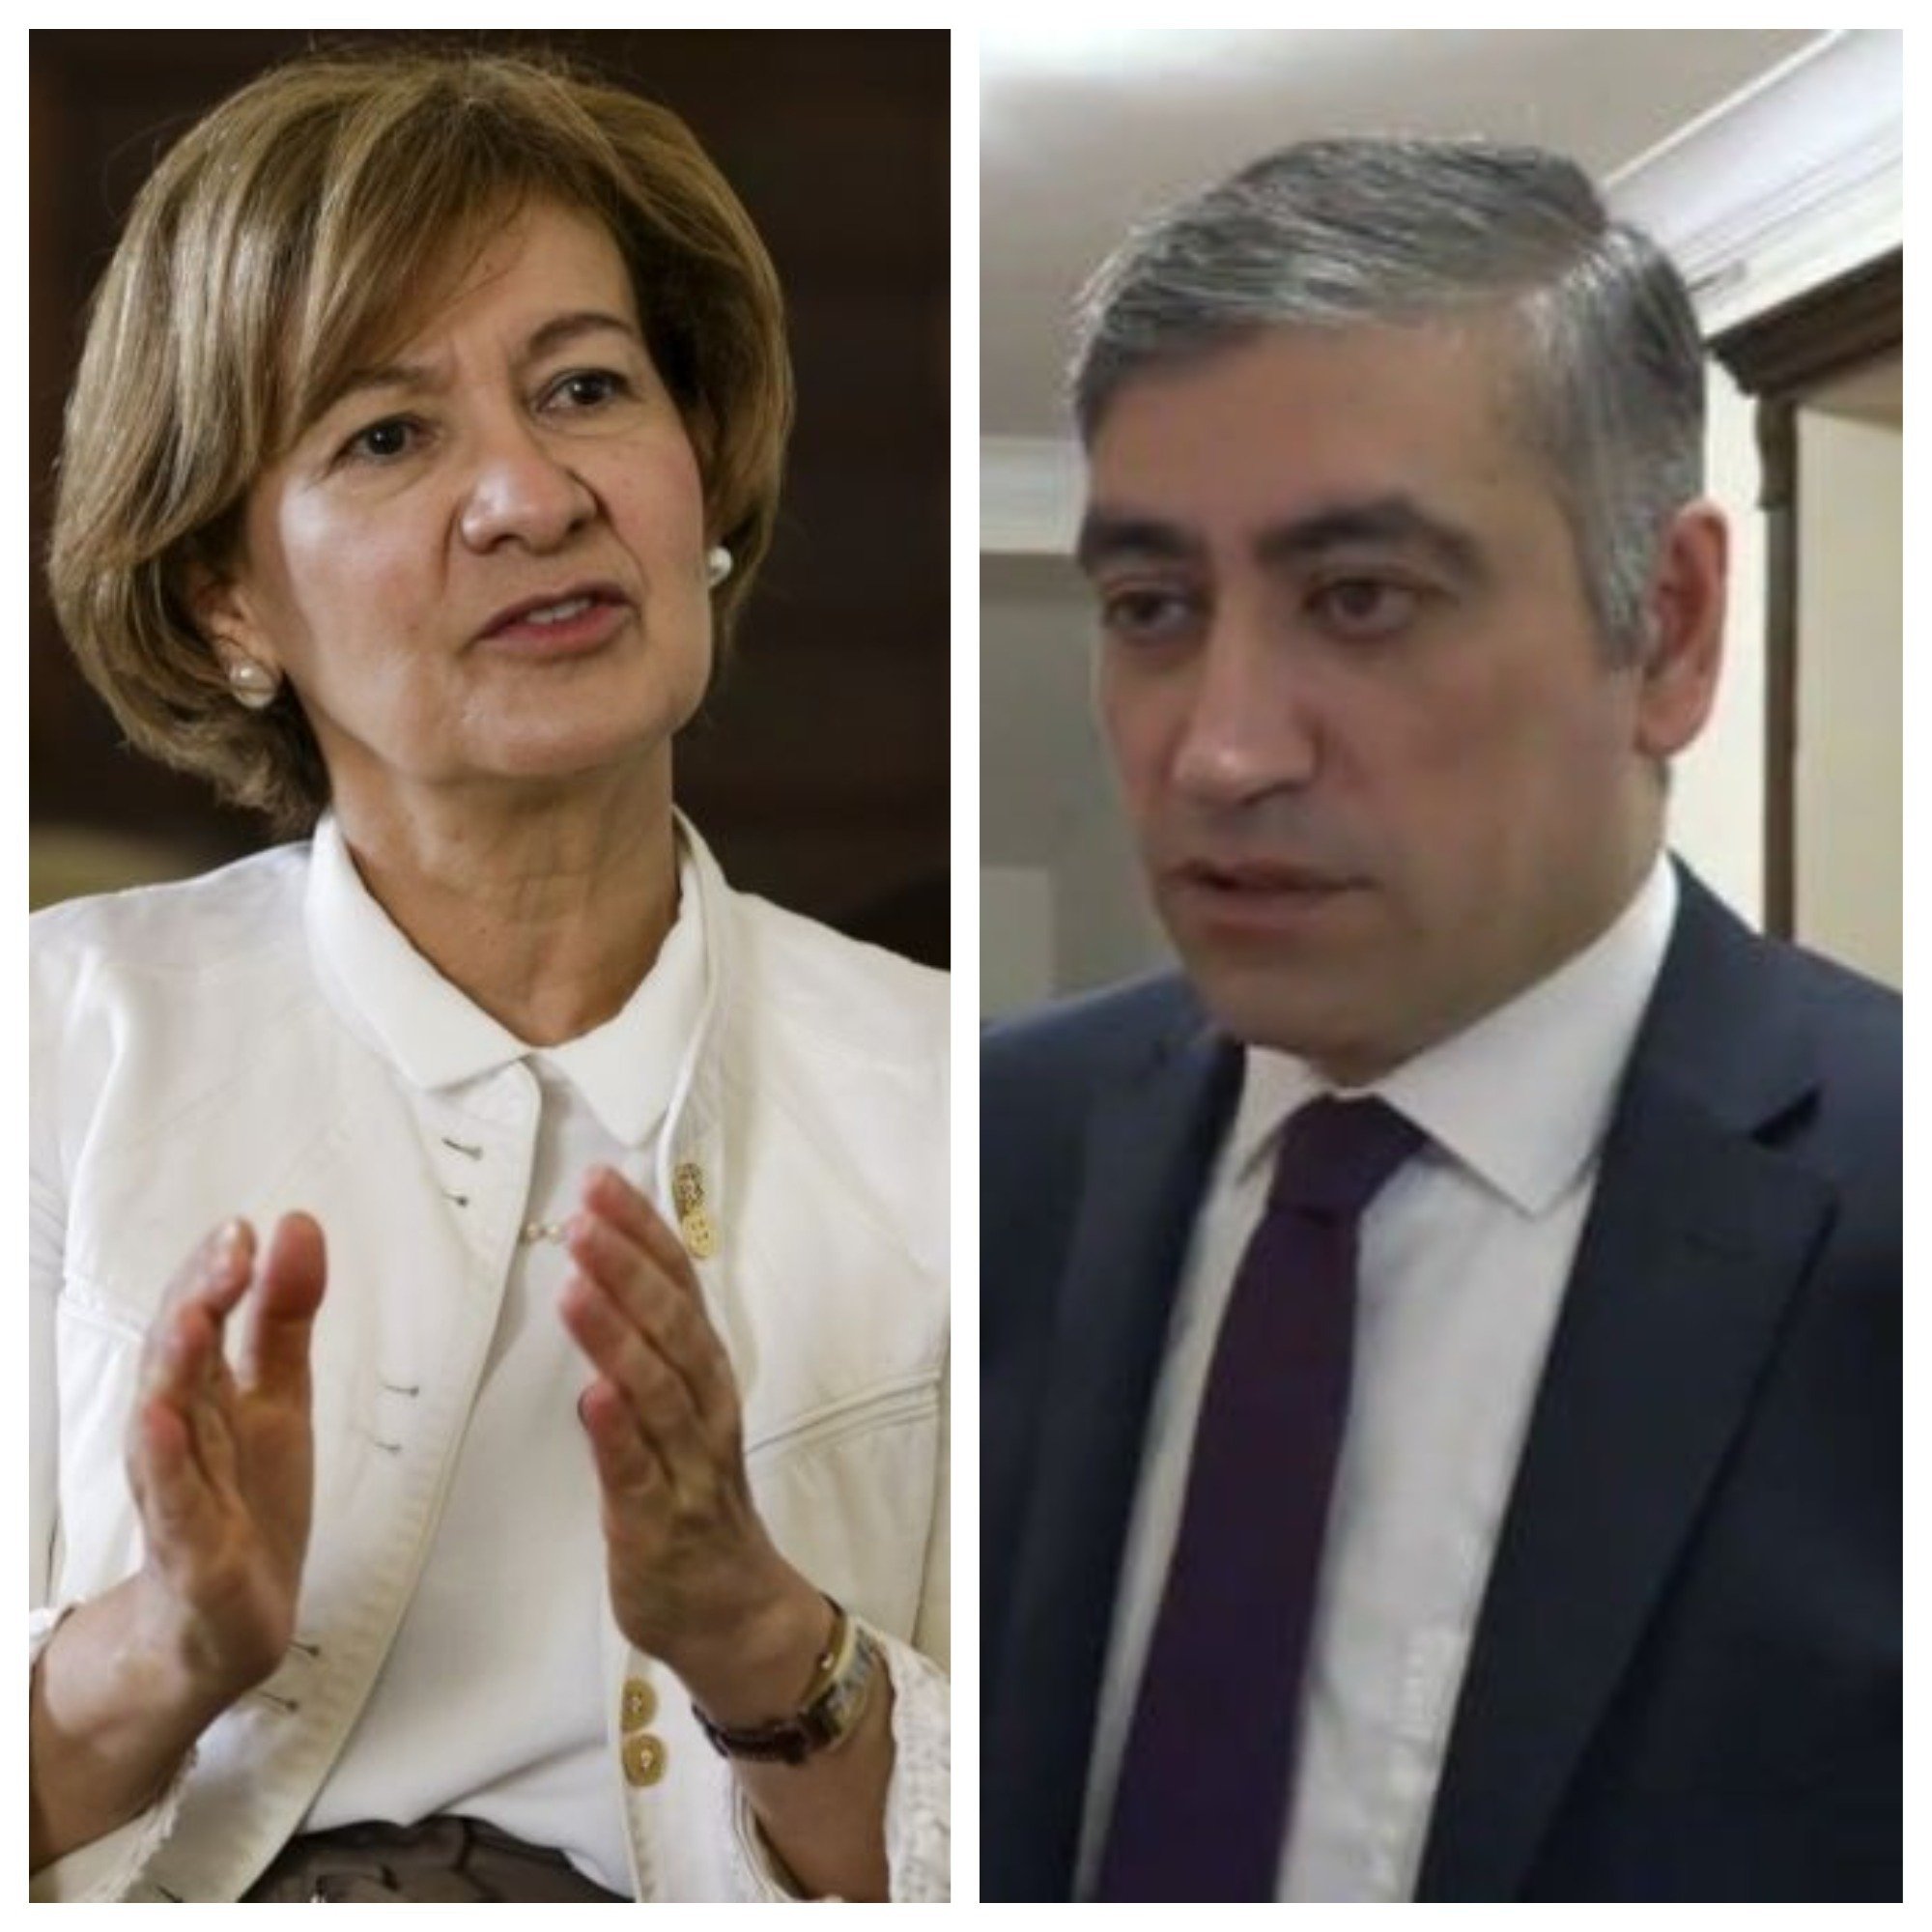 Մեդիայի ազատության հարցերով ԵԱՀԿ ներկայացուցիչը պատրաստակամություն է հայտնել աջակցել Հայաստանին մեդիայի և խոսքի ազատության հարցերում